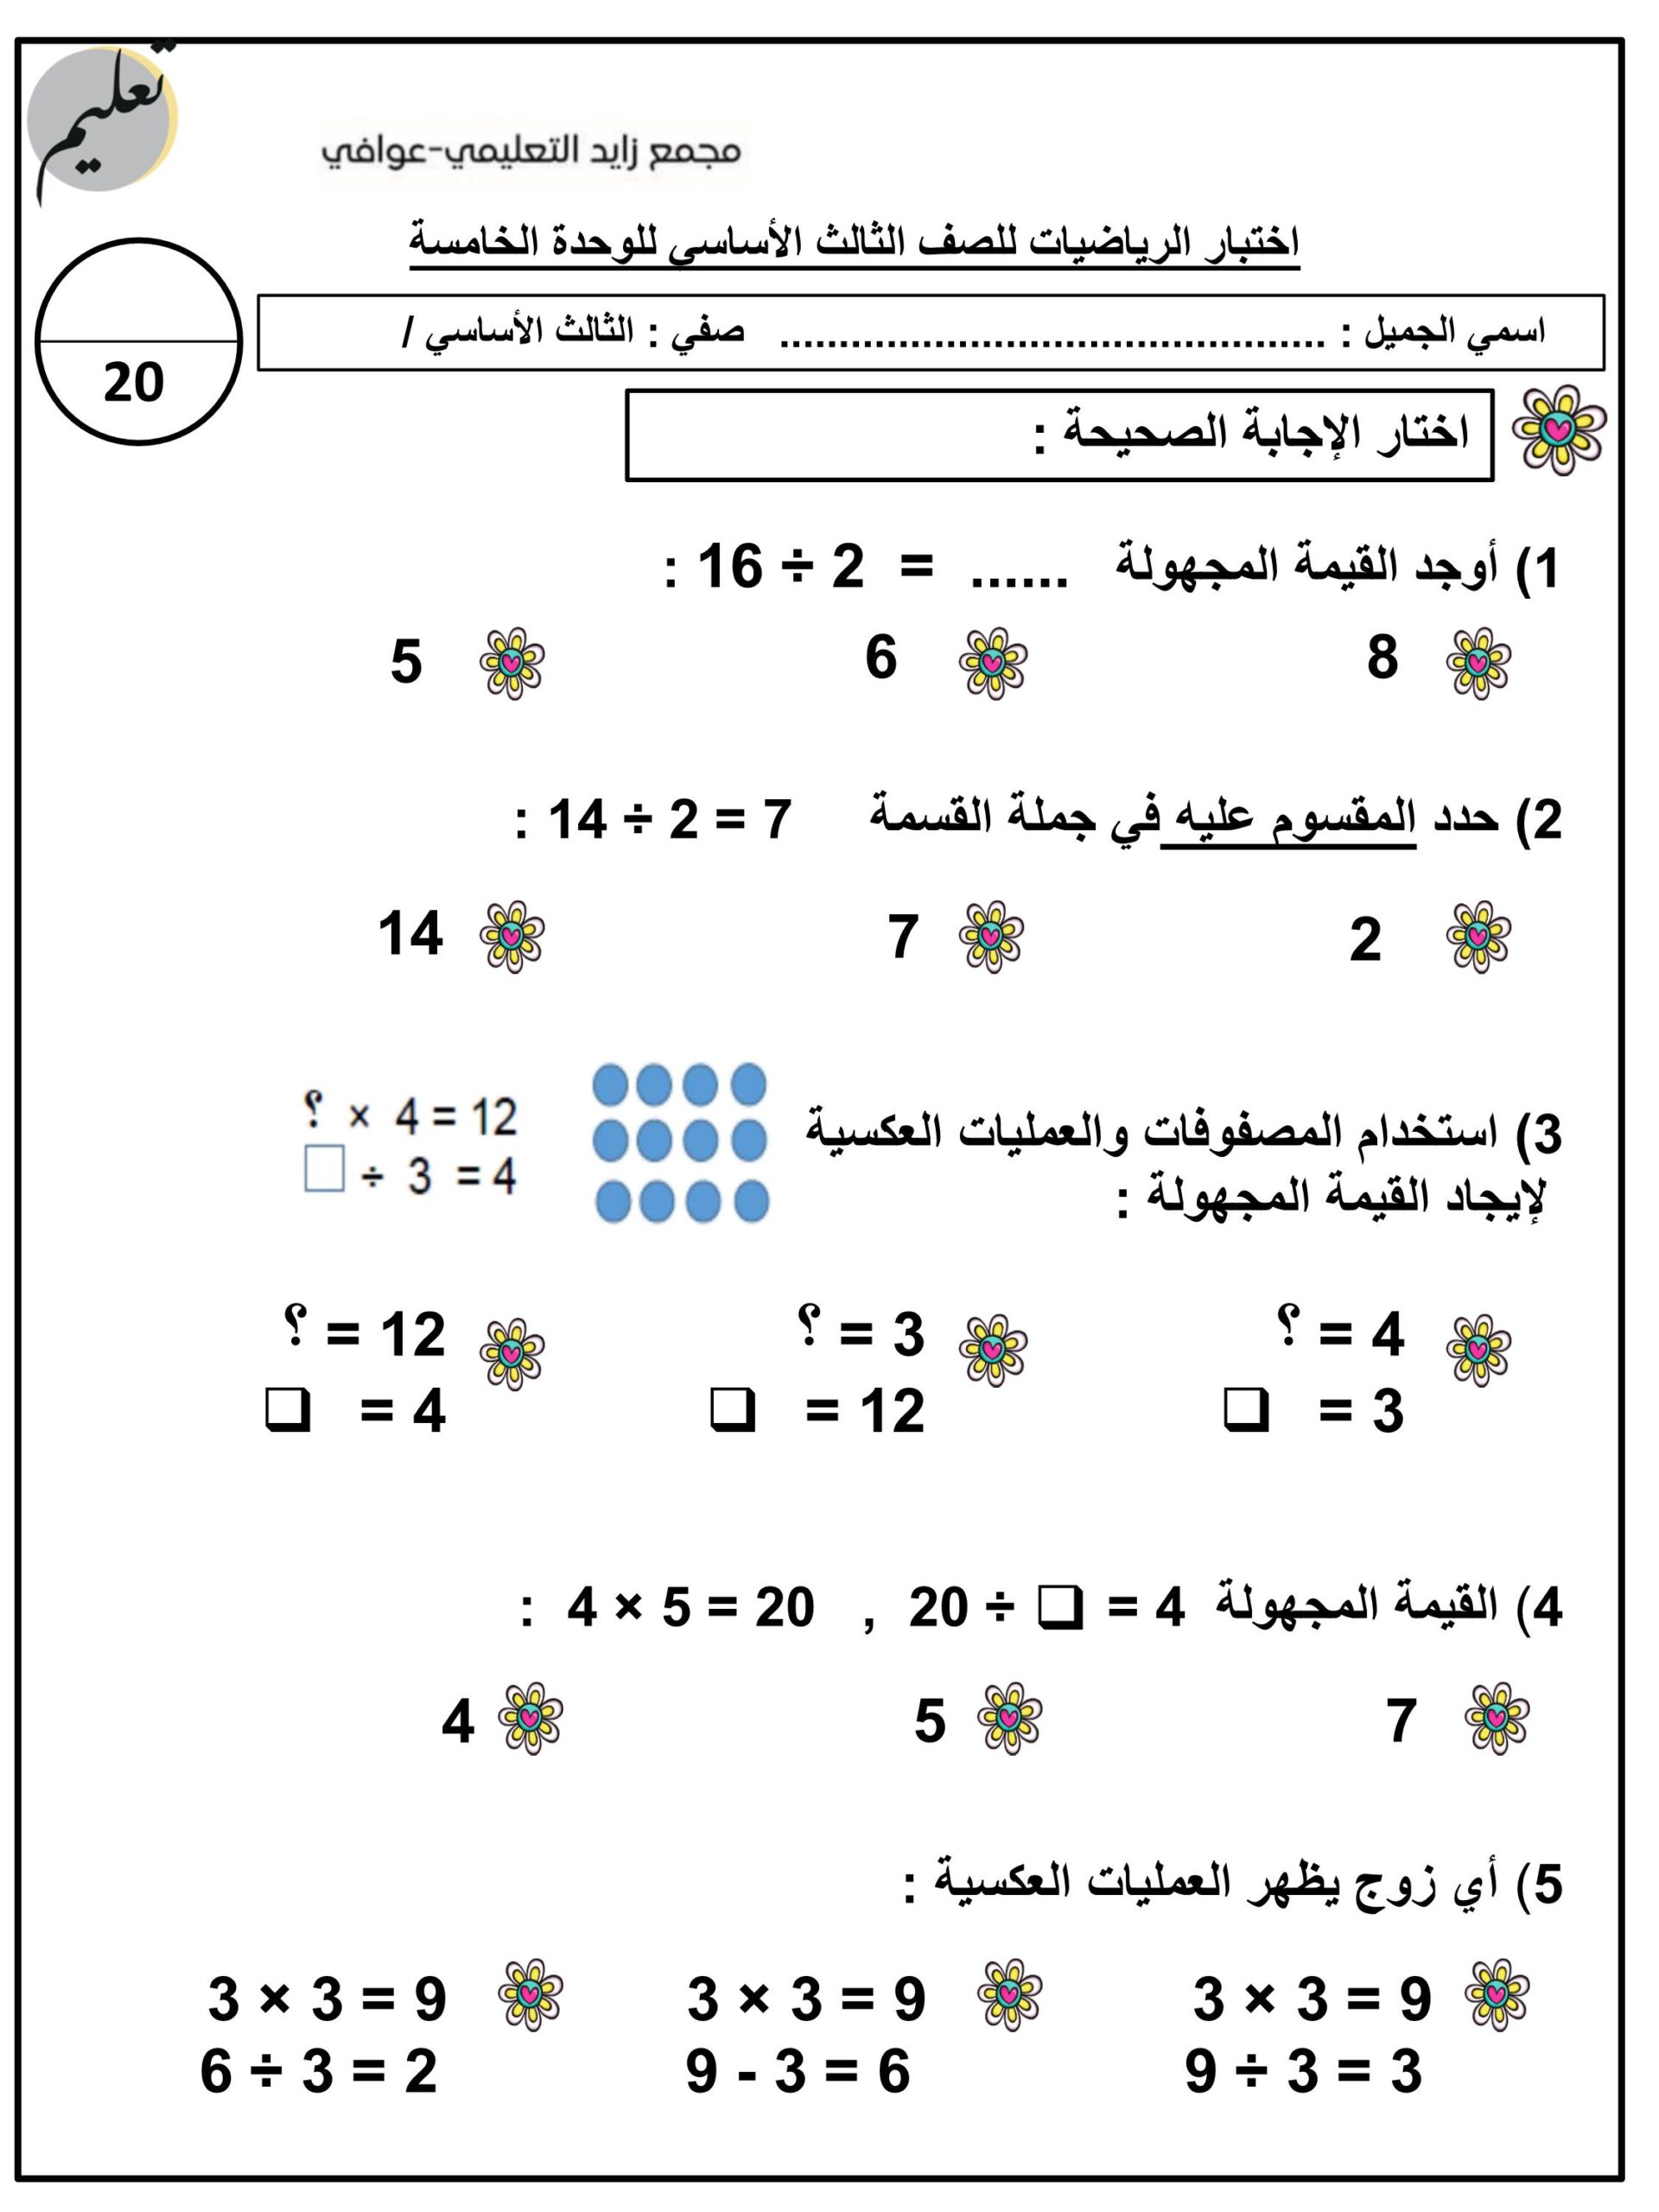 امتحان الوحدة الخامسة الرياضيات المتكاملة الصف الثالث 